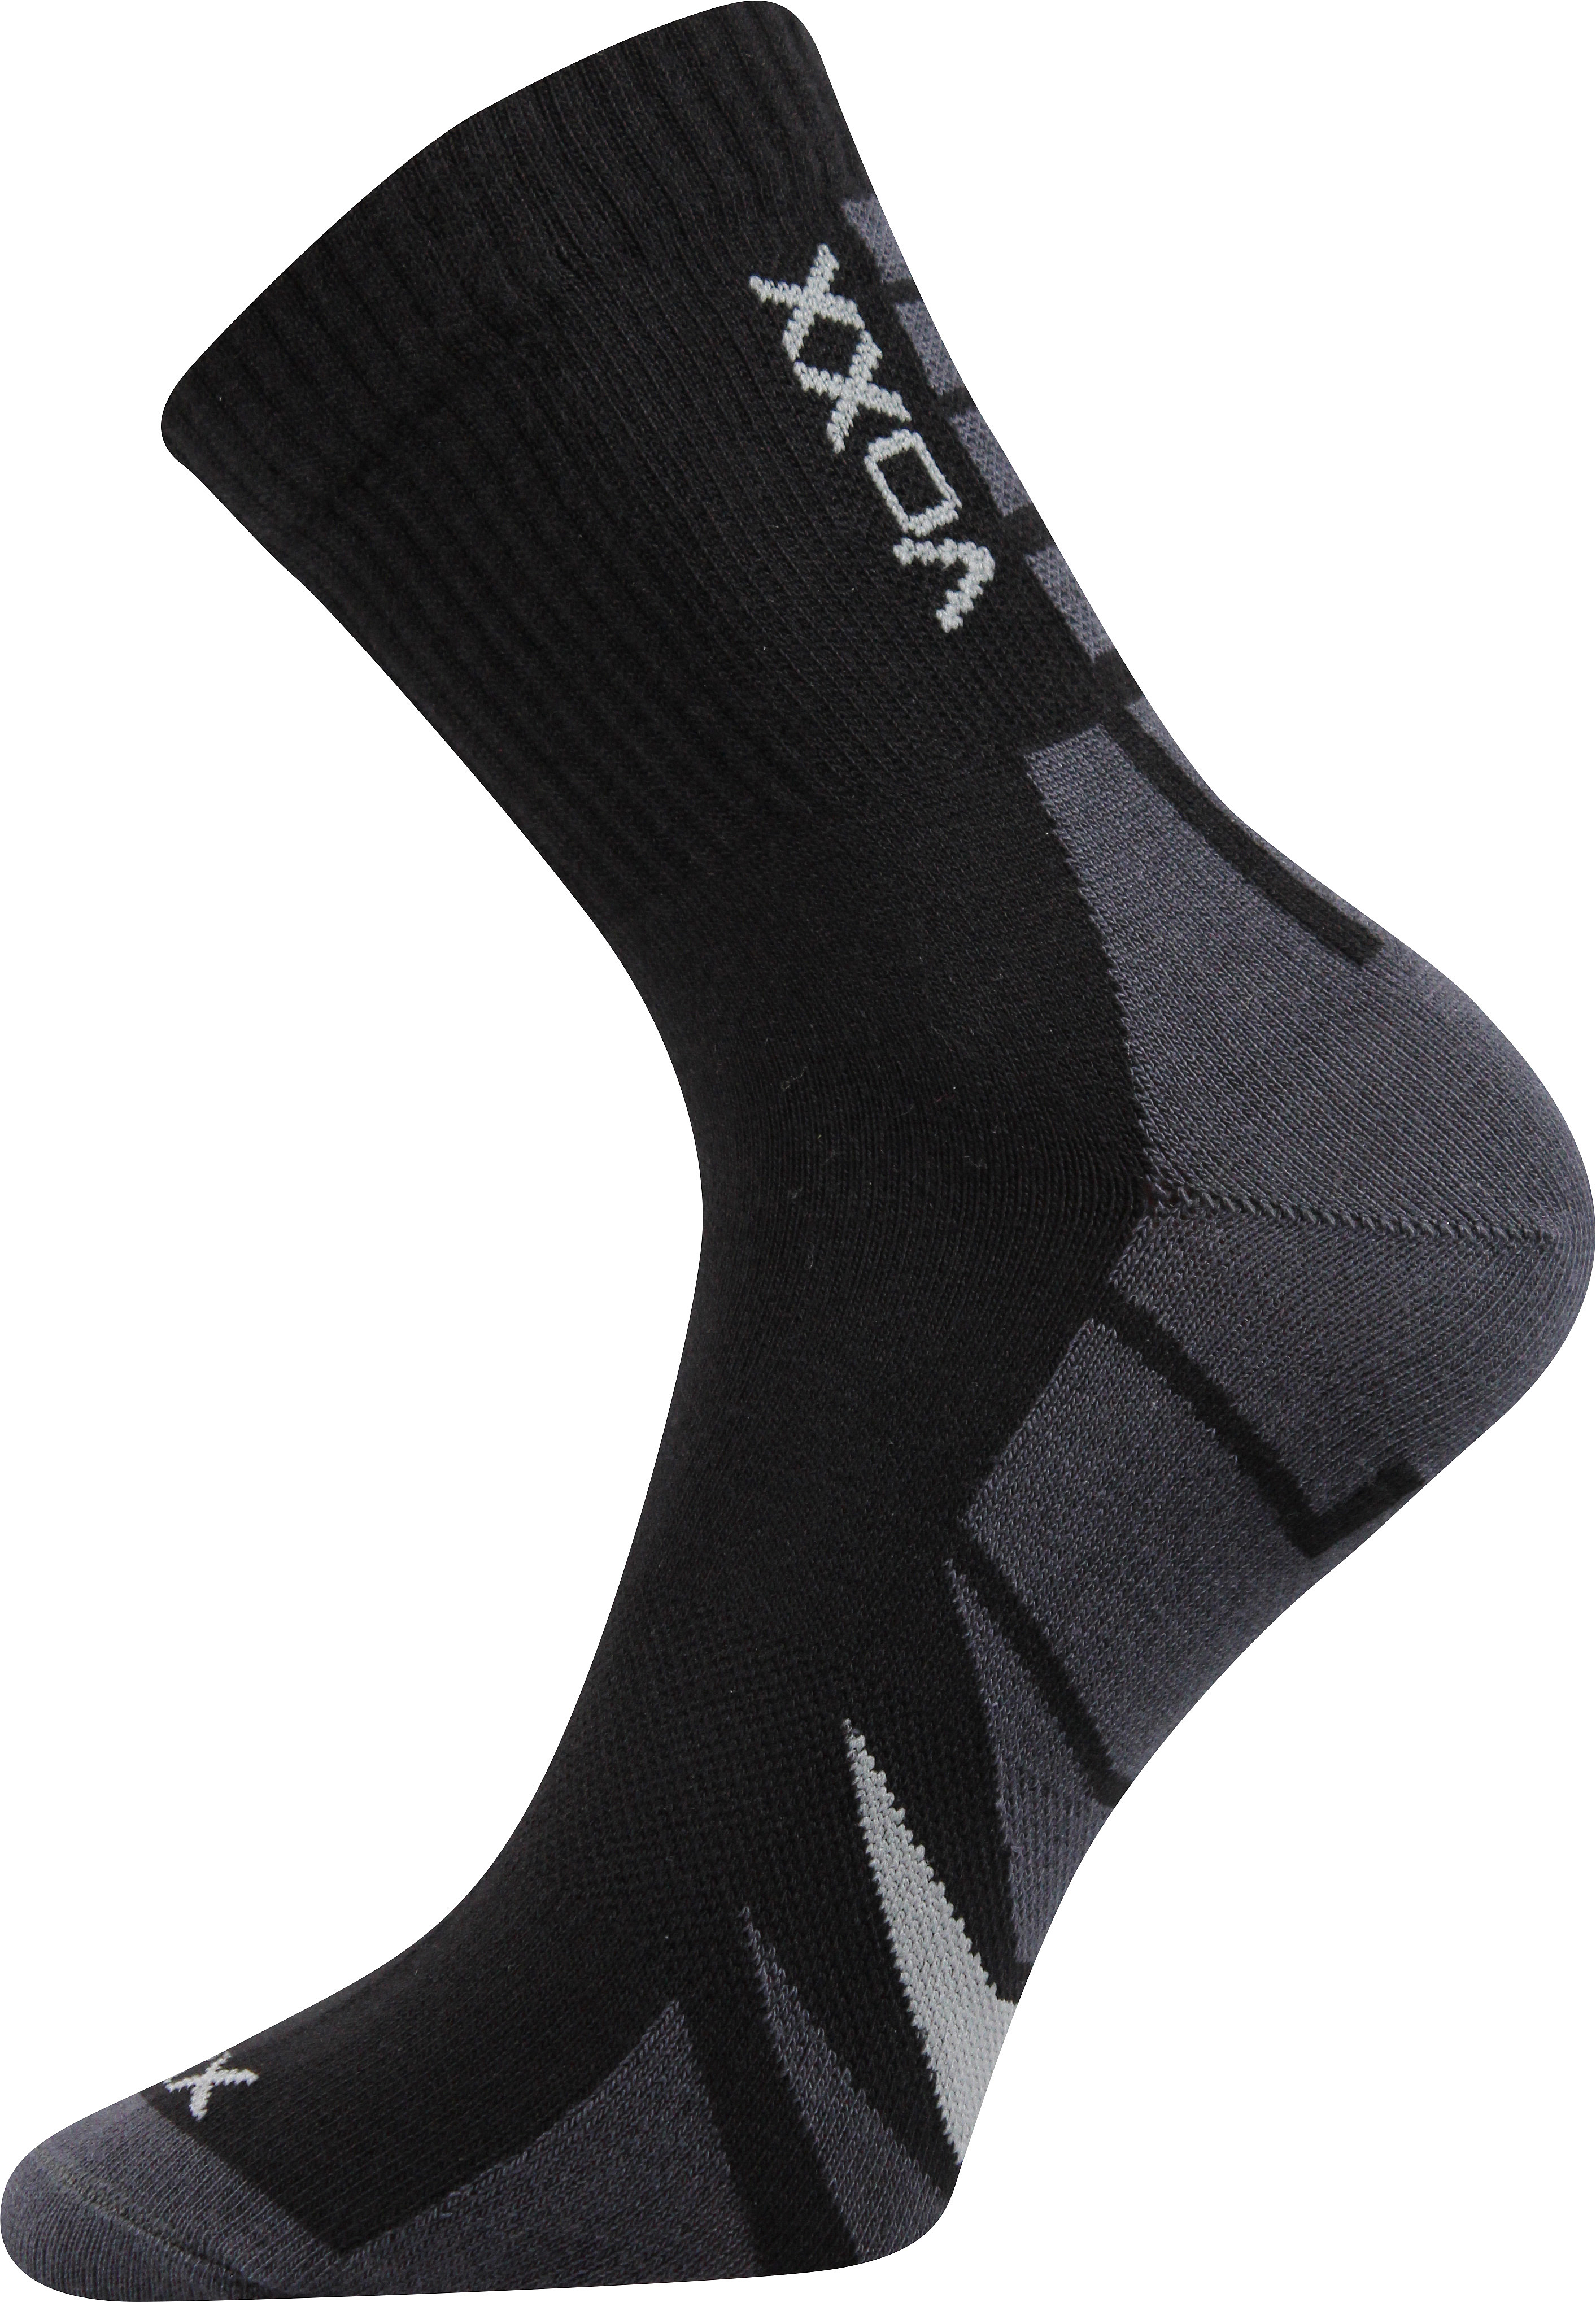 Ponožky sportovní Voxx Hermes - černé-šedé, 39-42